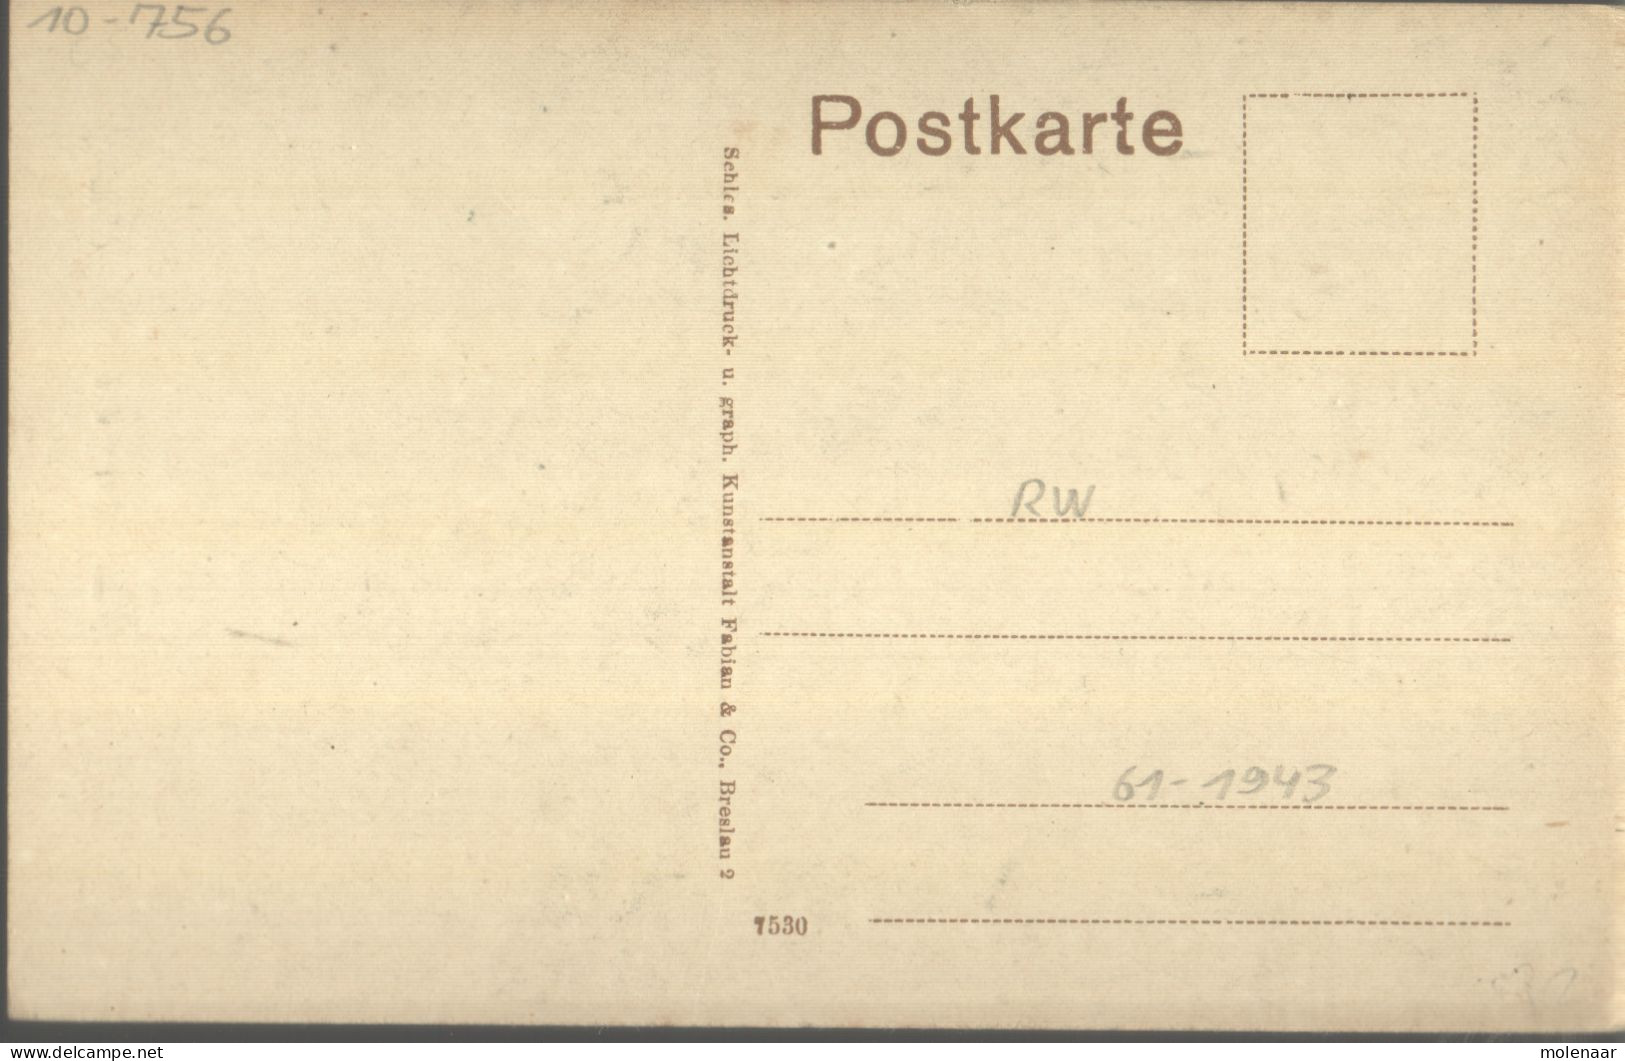 Postkaarten > Europa > Duitsland > Nordrhein-Westfalen > Lemgo Papenstsrasse Ongebruikkt (13184) - Lemgo